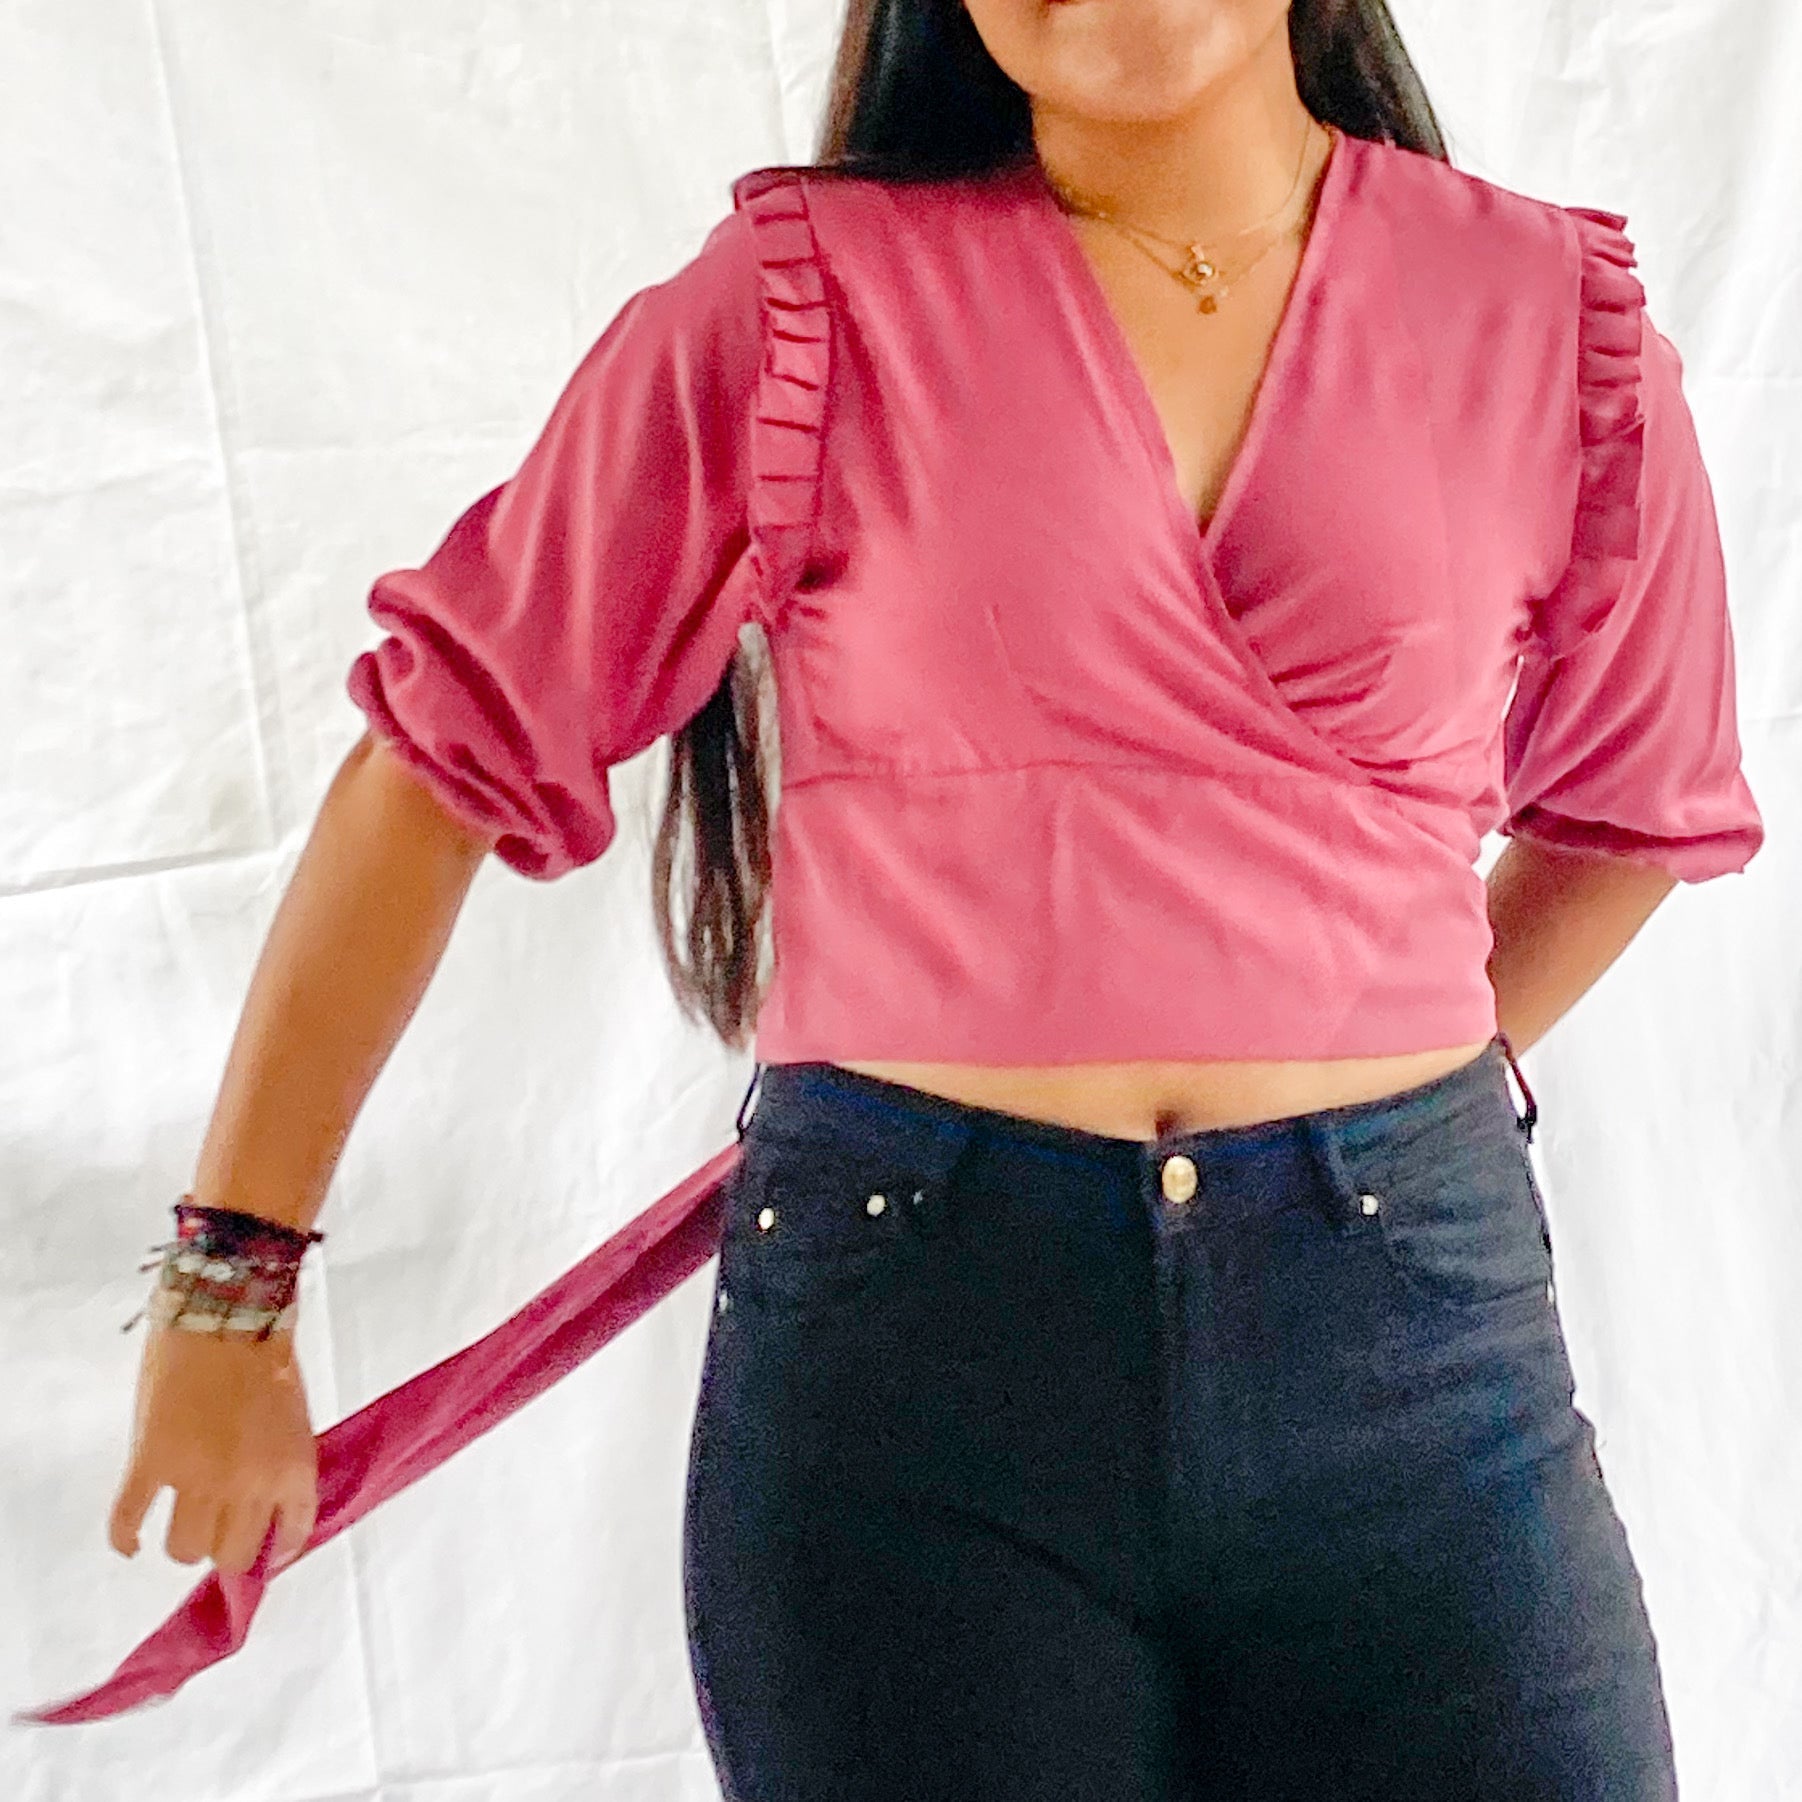 Blusa manga 3/4 con resorte en el puño, boleros en la siza y amarrado, 100% Colombiano. Color rosa.